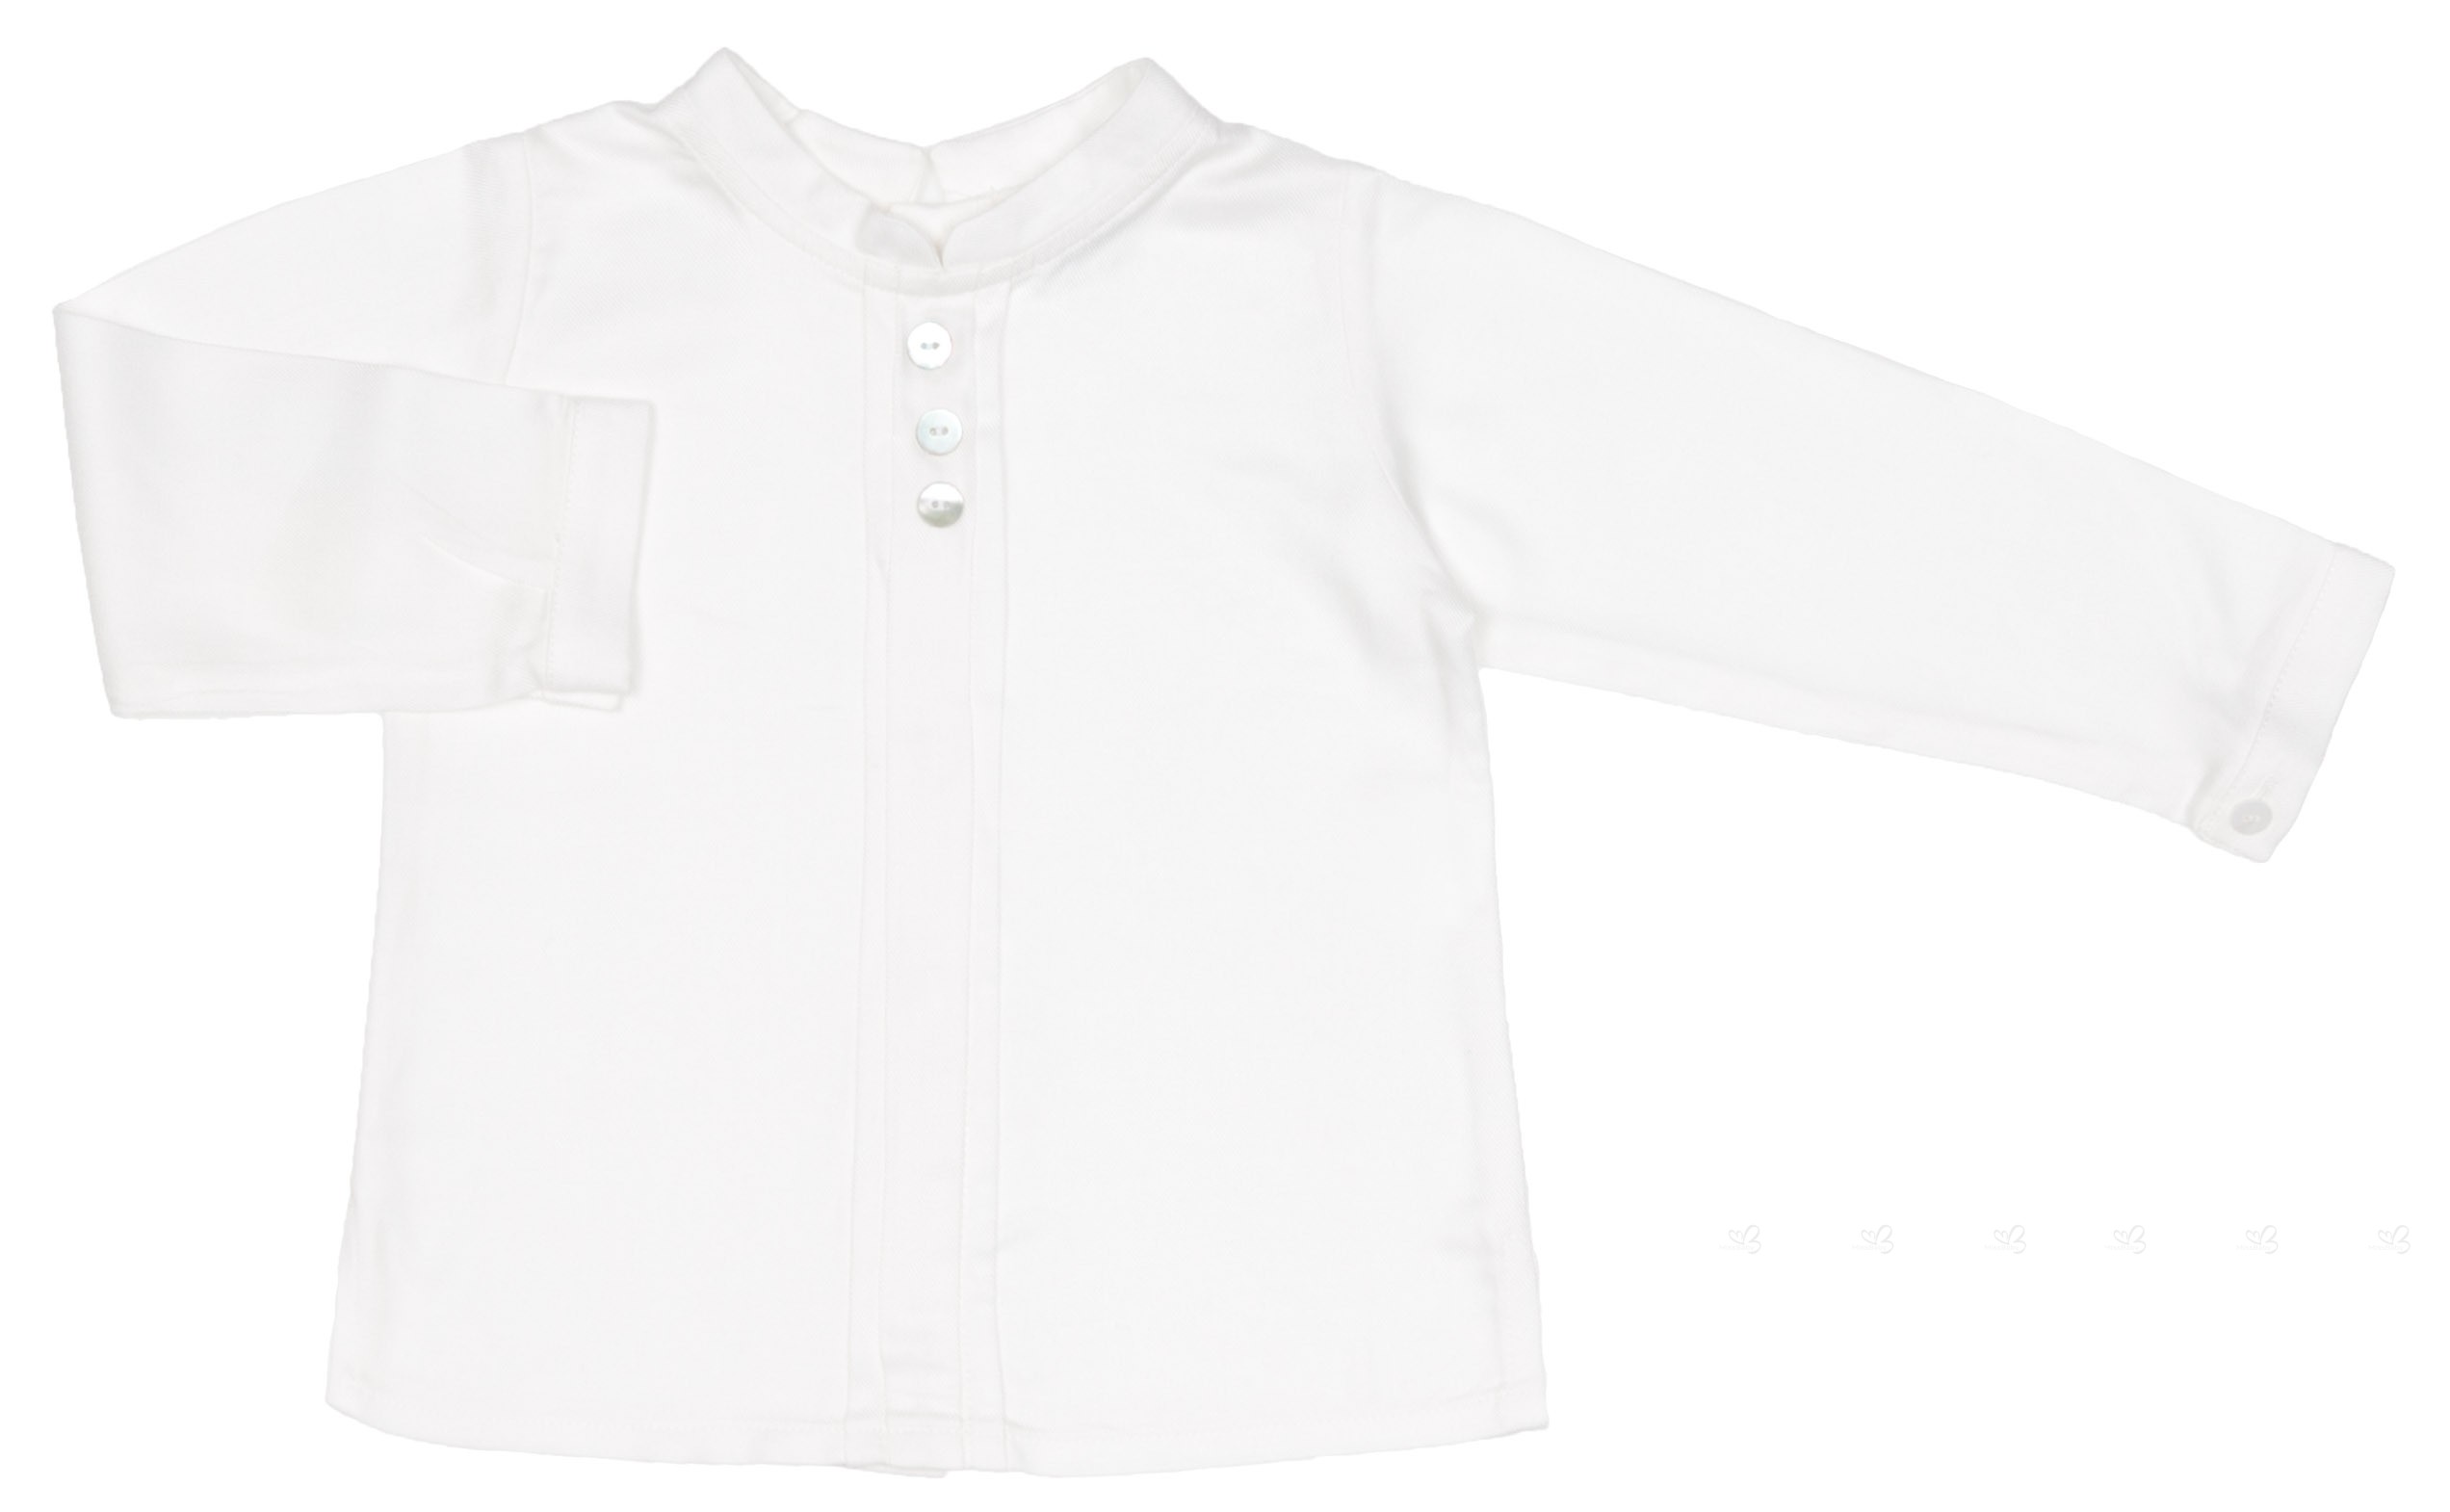 Rochy Baby Boys White Shirt & Grey Short Set | Missbaby